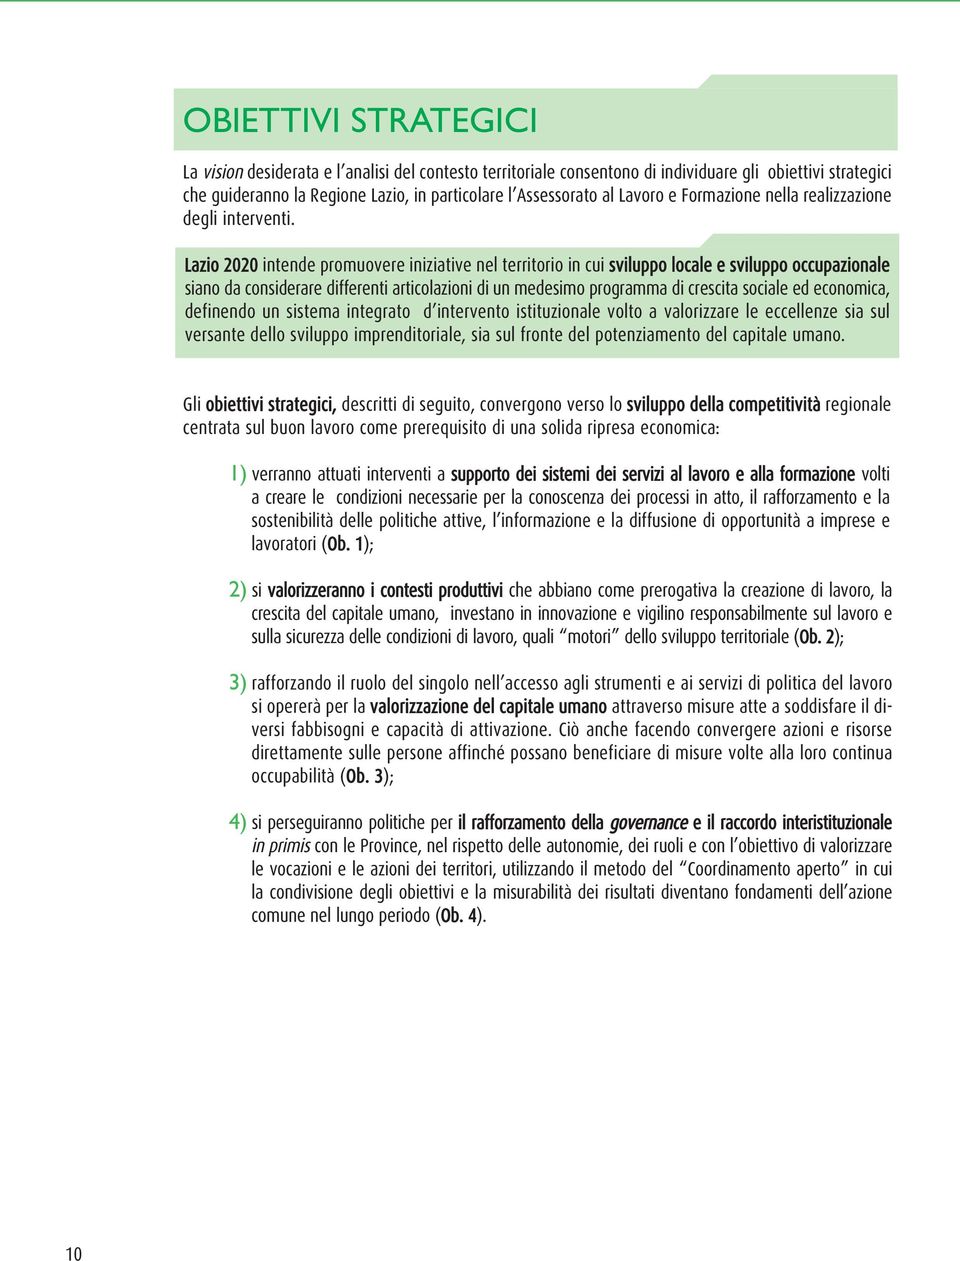 Lazio 2020 intende promuovere iniziative nel territorio in cui sviluppo locale e sviluppo occupazionale siano da considerare differenti articolazioni di un medesimo programma di crescita sociale ed